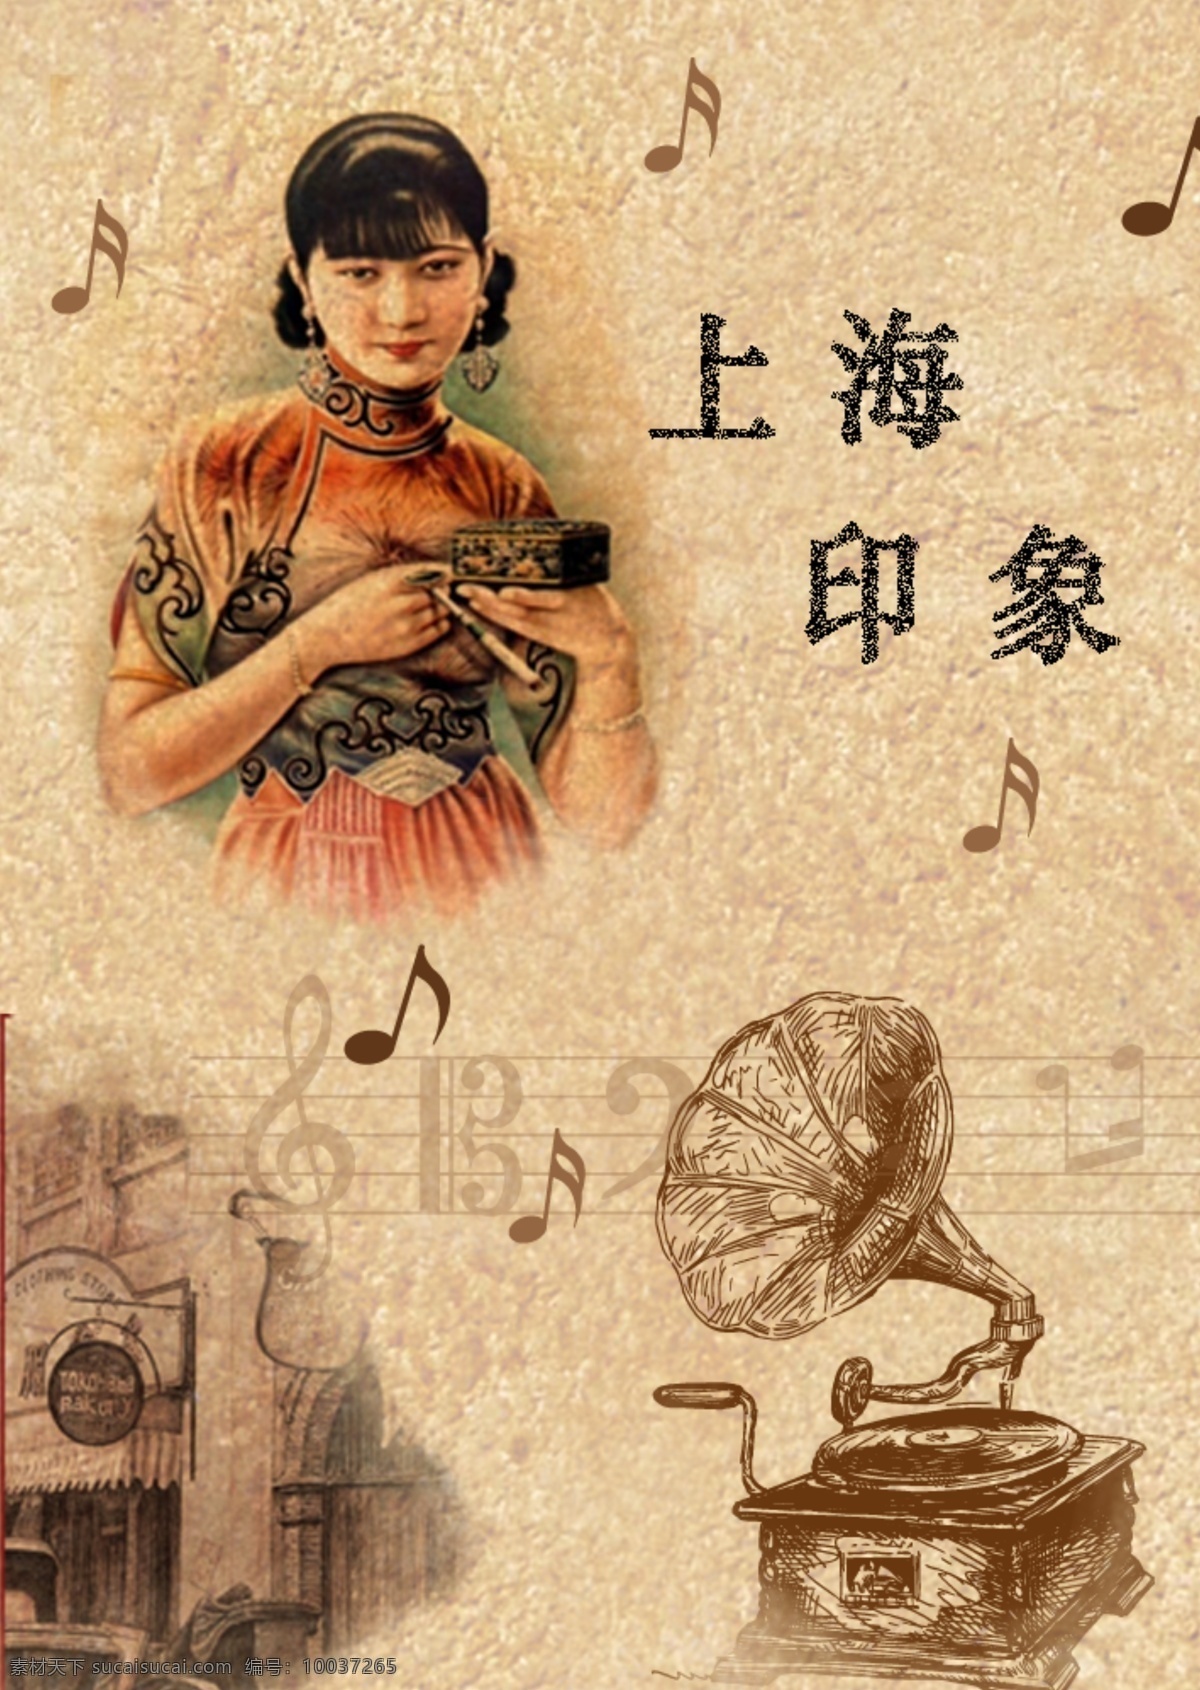 上海印象 上海 印象 老上海 音乐 小喇叭 播音器 版画 女人 黄色